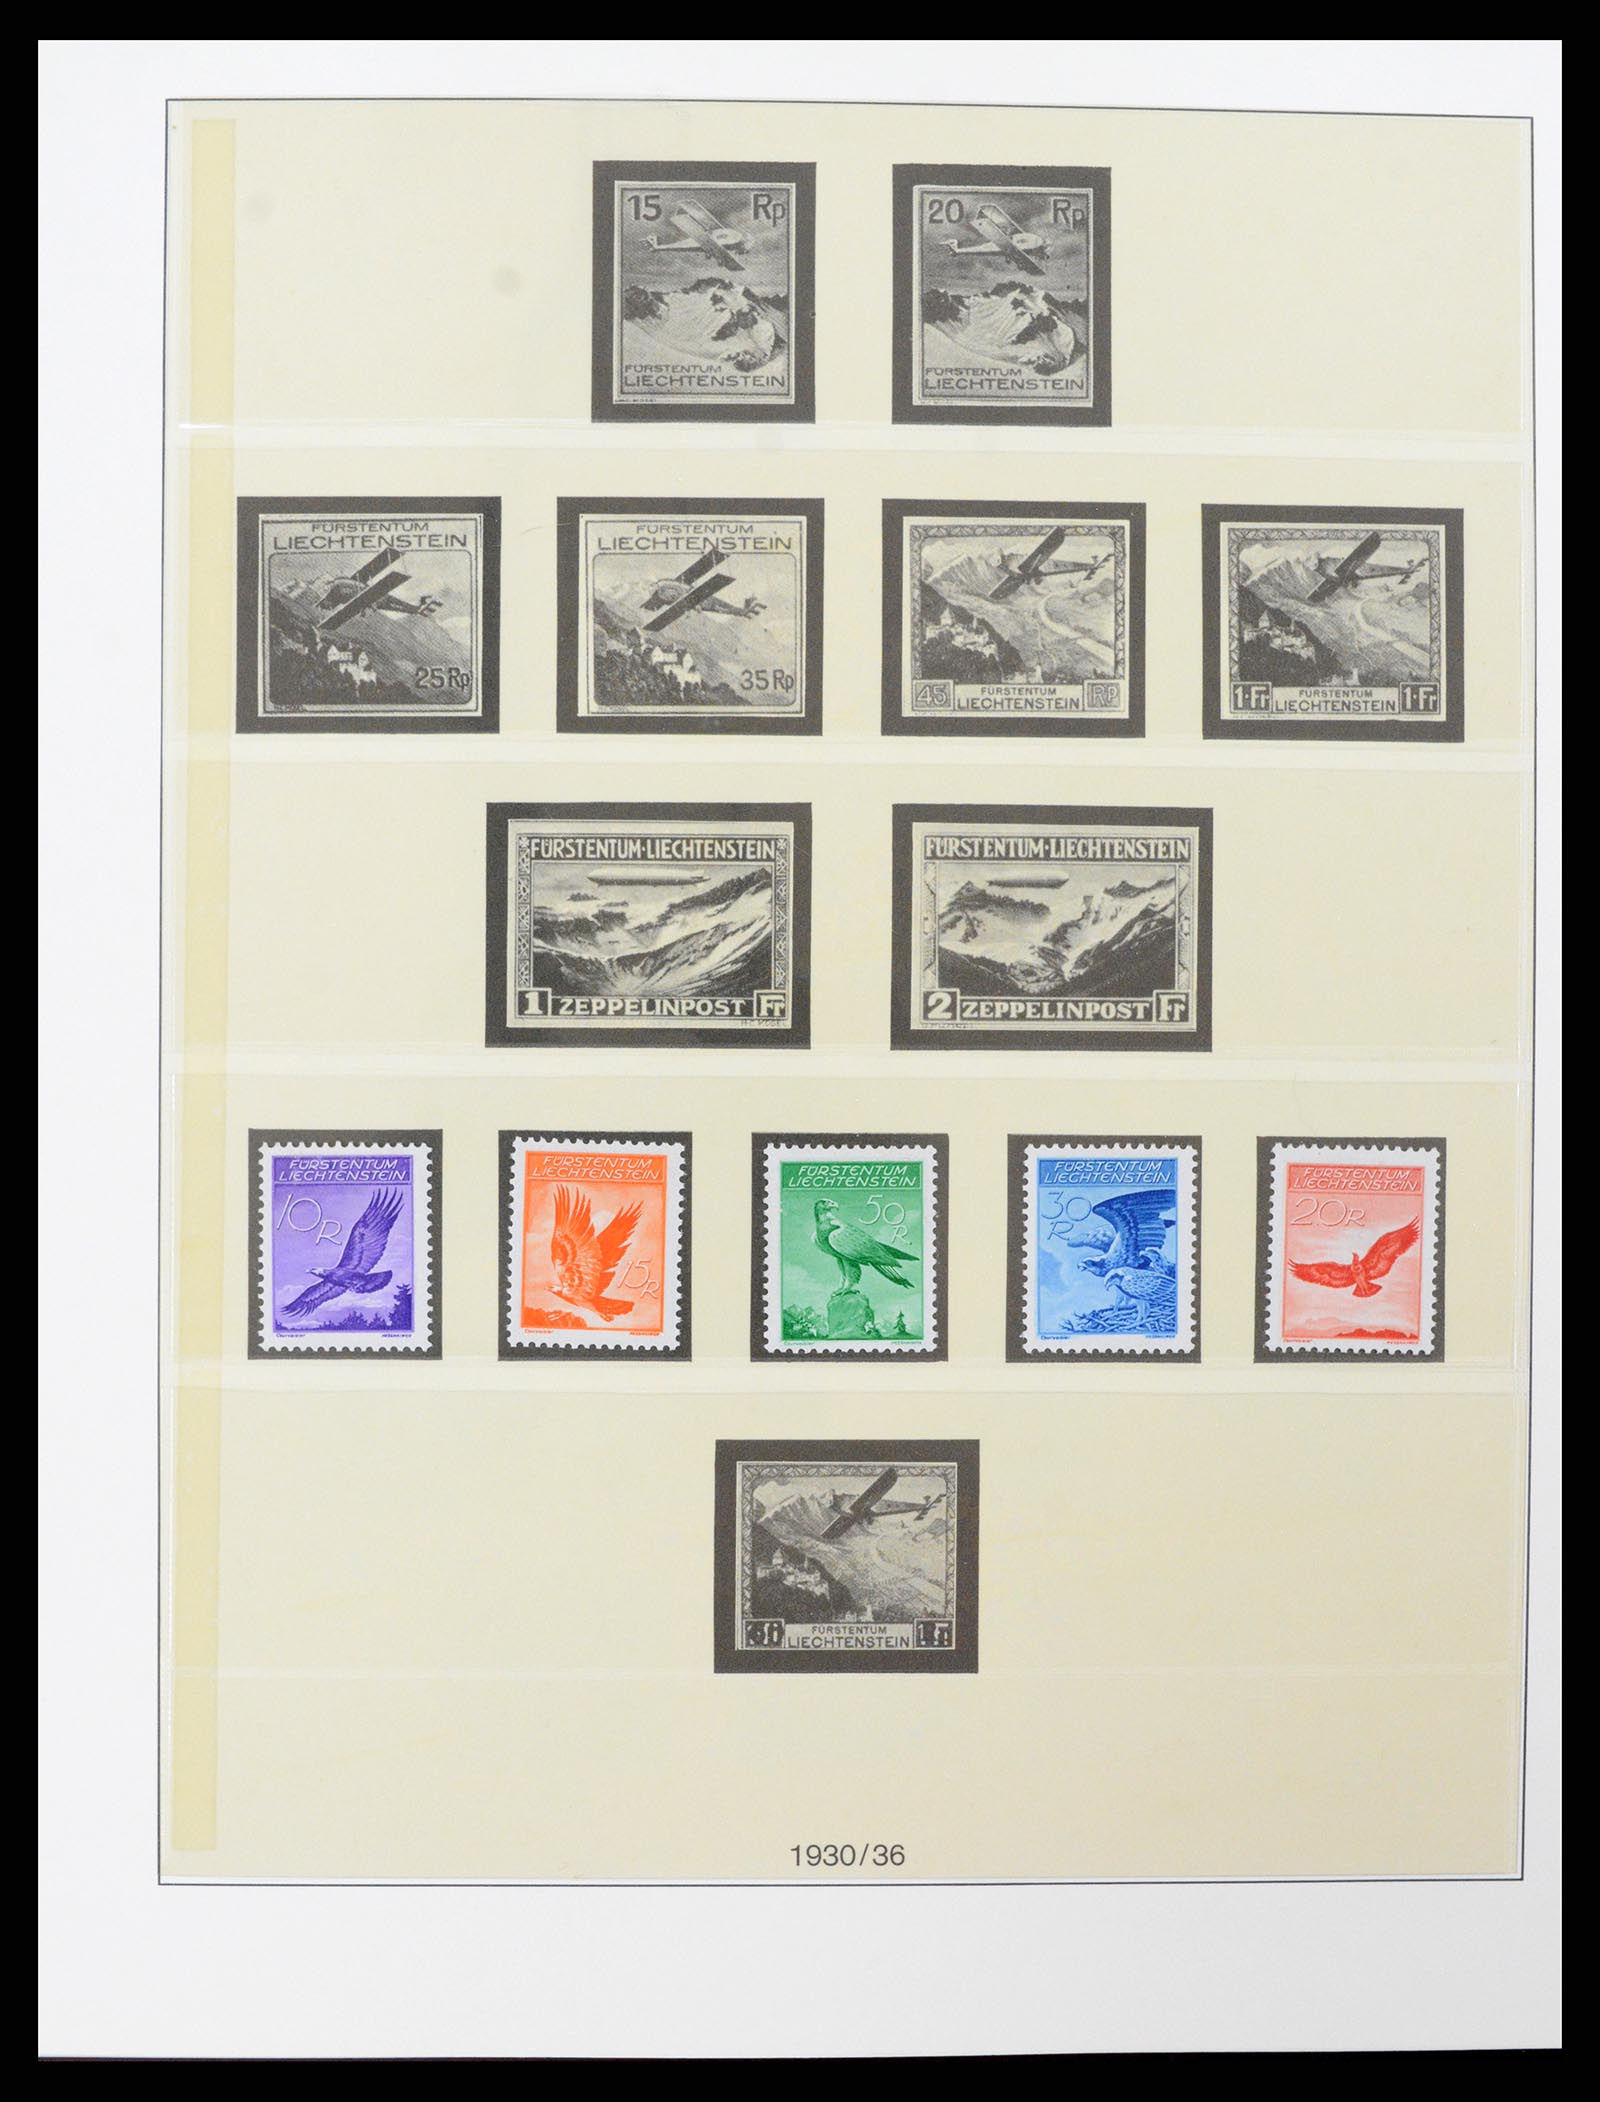 37293 018 - Stamp collection 37293 Liechtenstein 1912-2003.